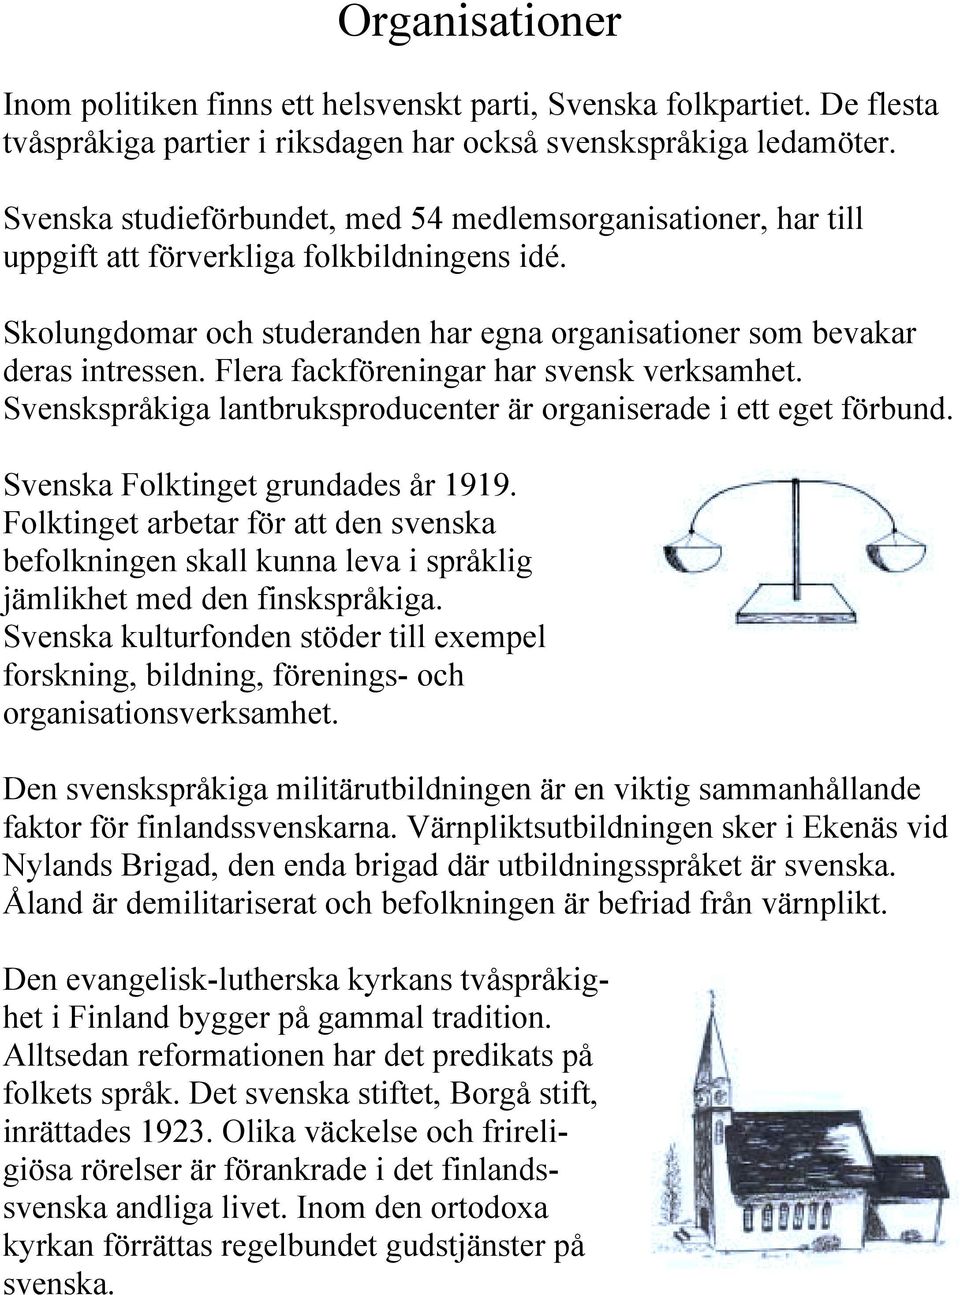 Flera fackföreningar har svensk verksamhet. Svenskspråkiga lantbruksproducenter är organiserade i ett eget förbund. Svenska Folktinget grundades år 1919.